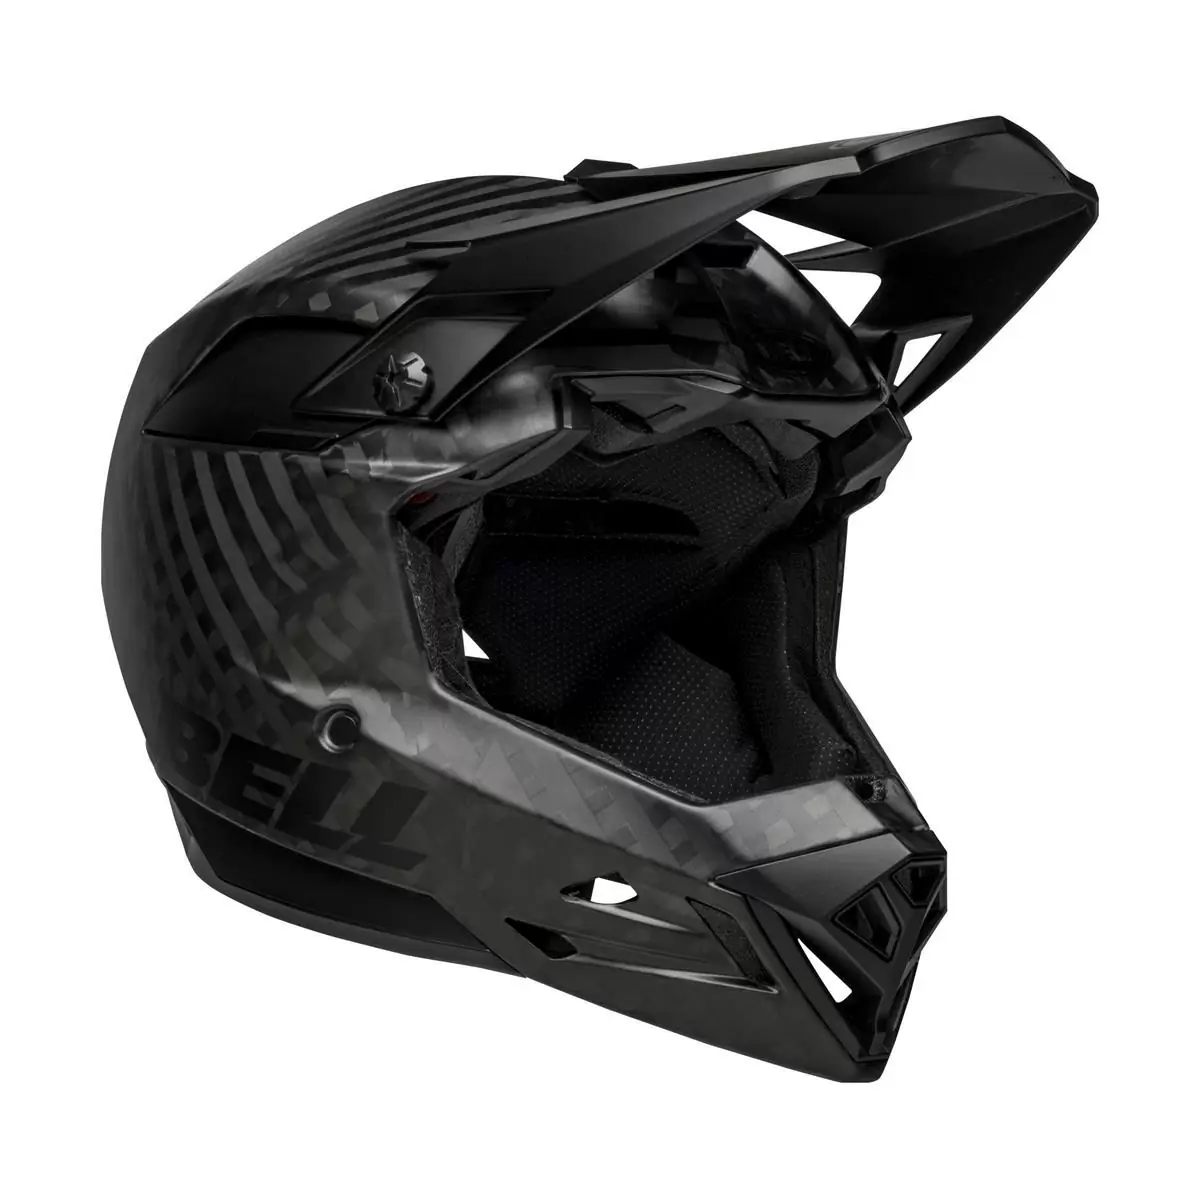 Full-10 Spherical Matte Black Carbon Full Face Helmet Size XS/S (51-55cm) - image